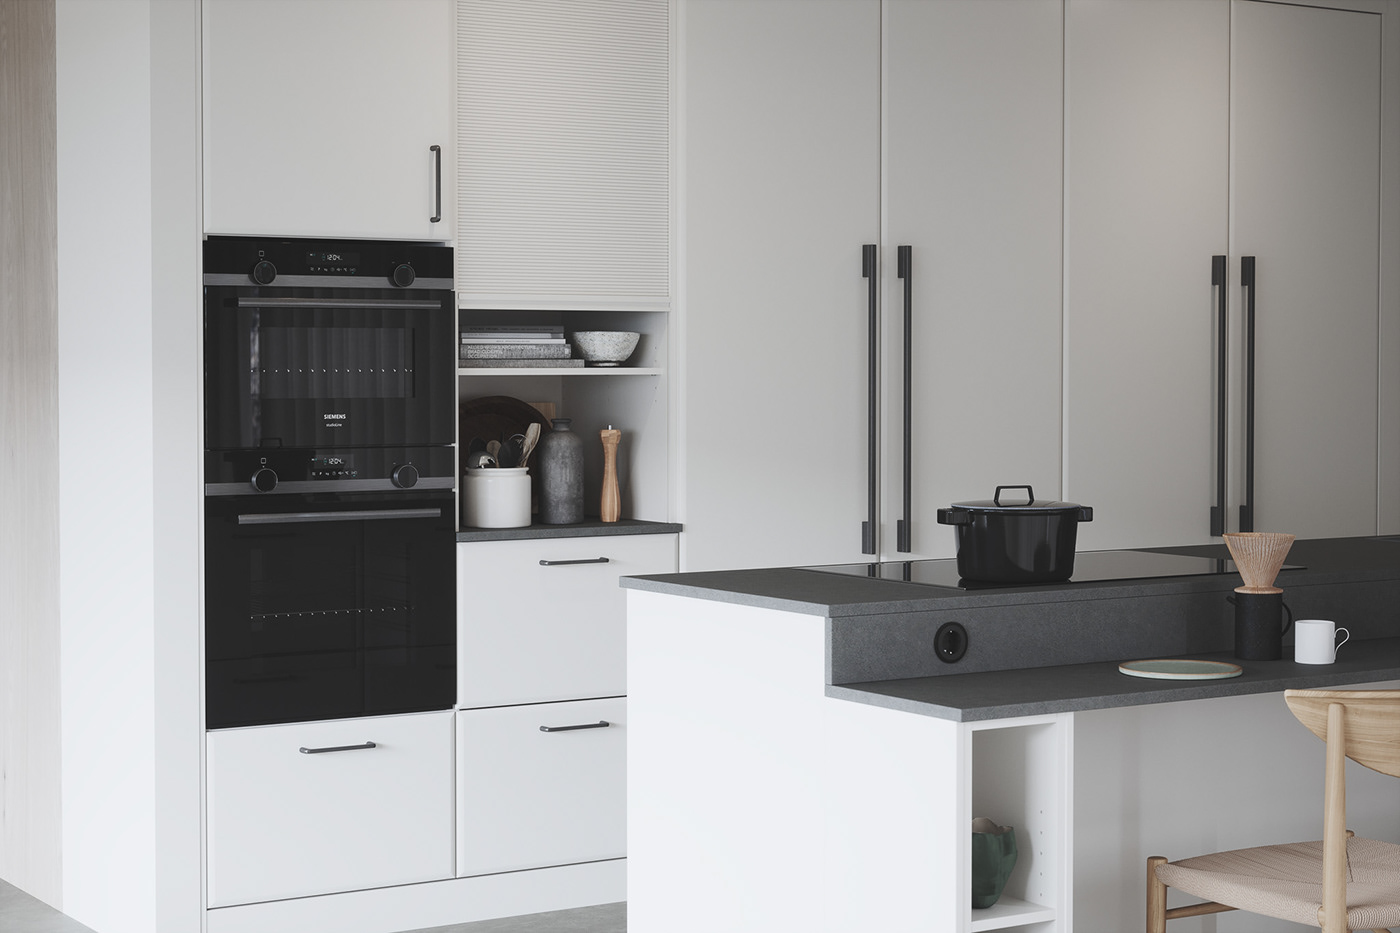 3D architecture archviz CGI Interior interior design  kitchen kitchen design design visualization